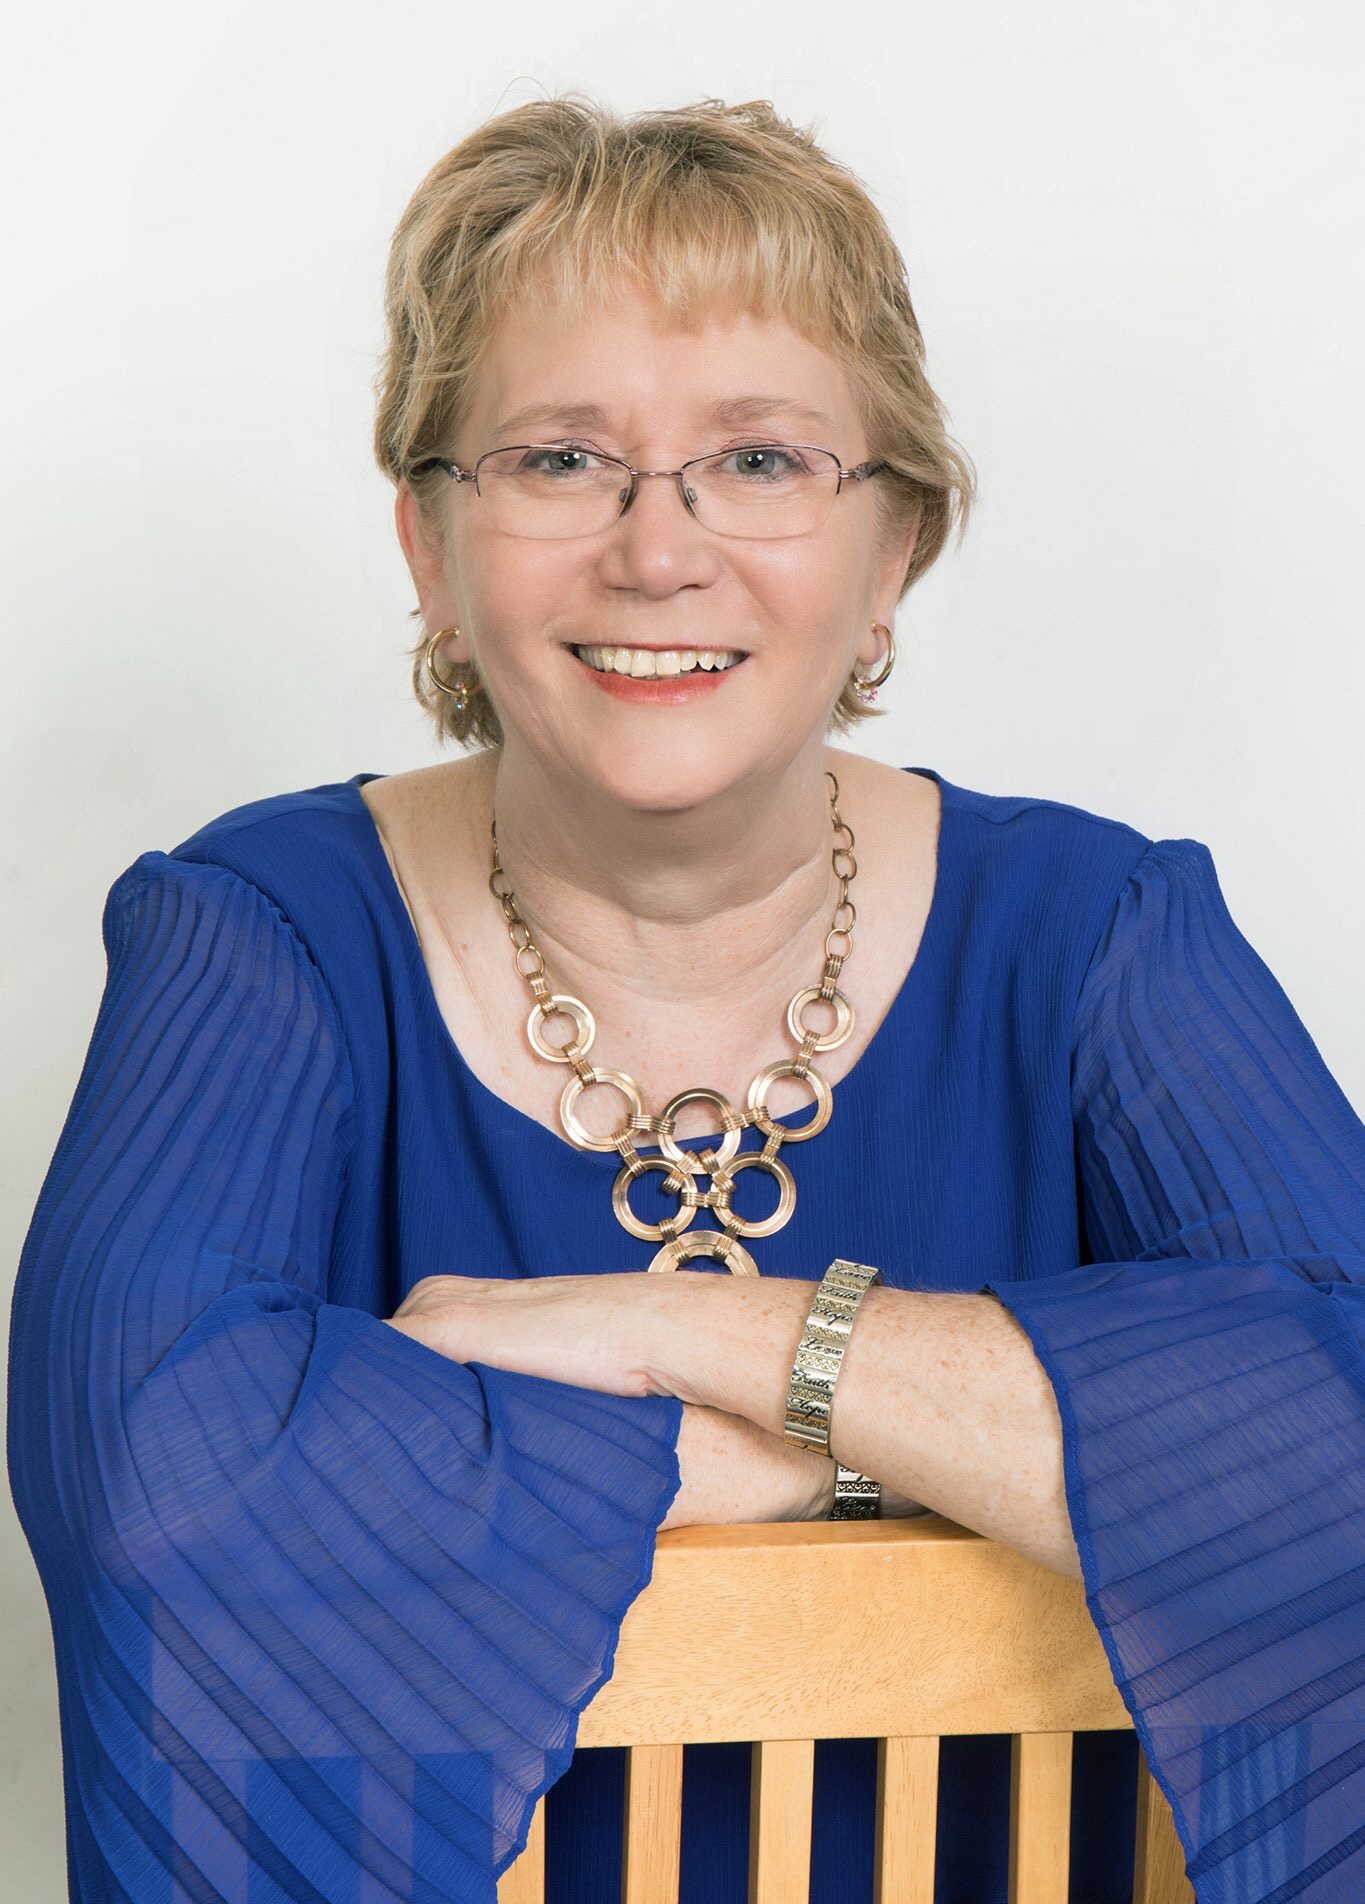 Cindy Ervin Huff